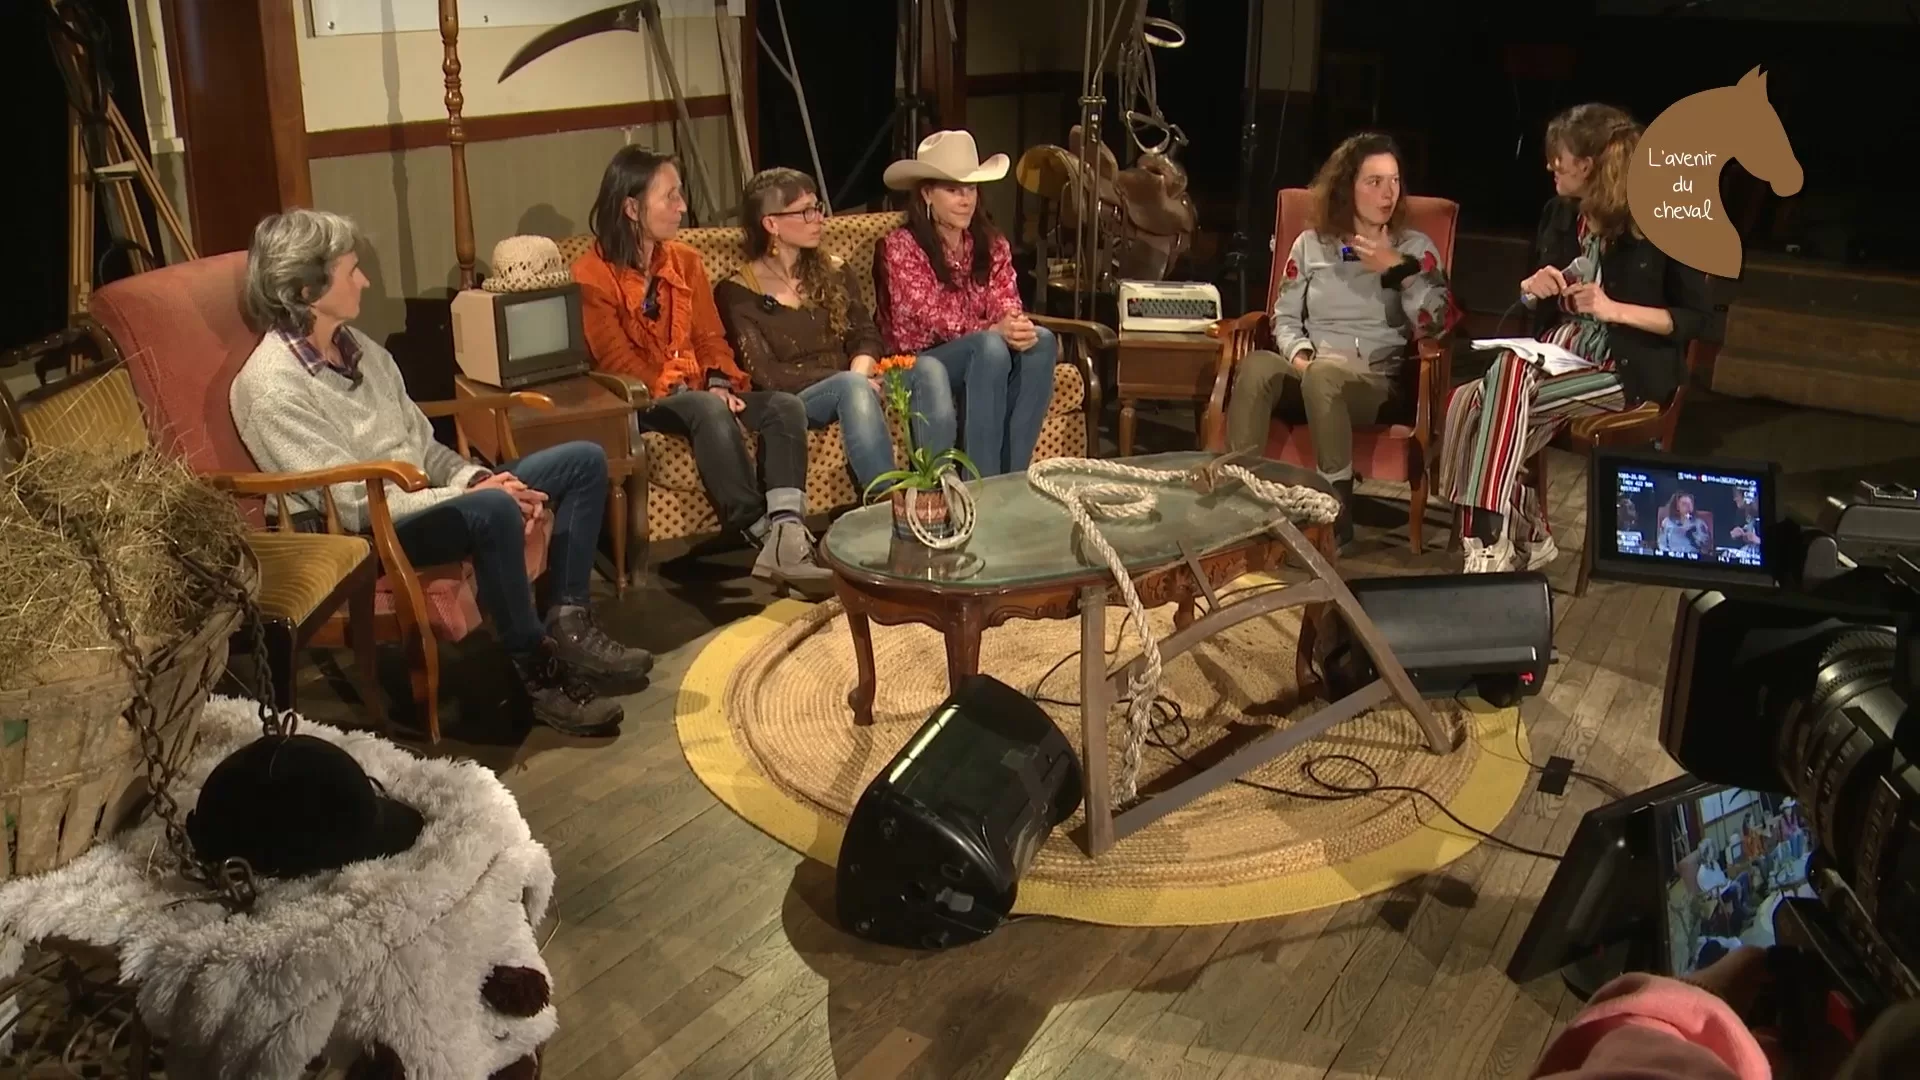 Au milieu d'un décor fleurant bon la campagne, un groupe de 6 femmes assises autour d'une table basse discutent. L'une d'elles porte un chapeau de cow-girl.